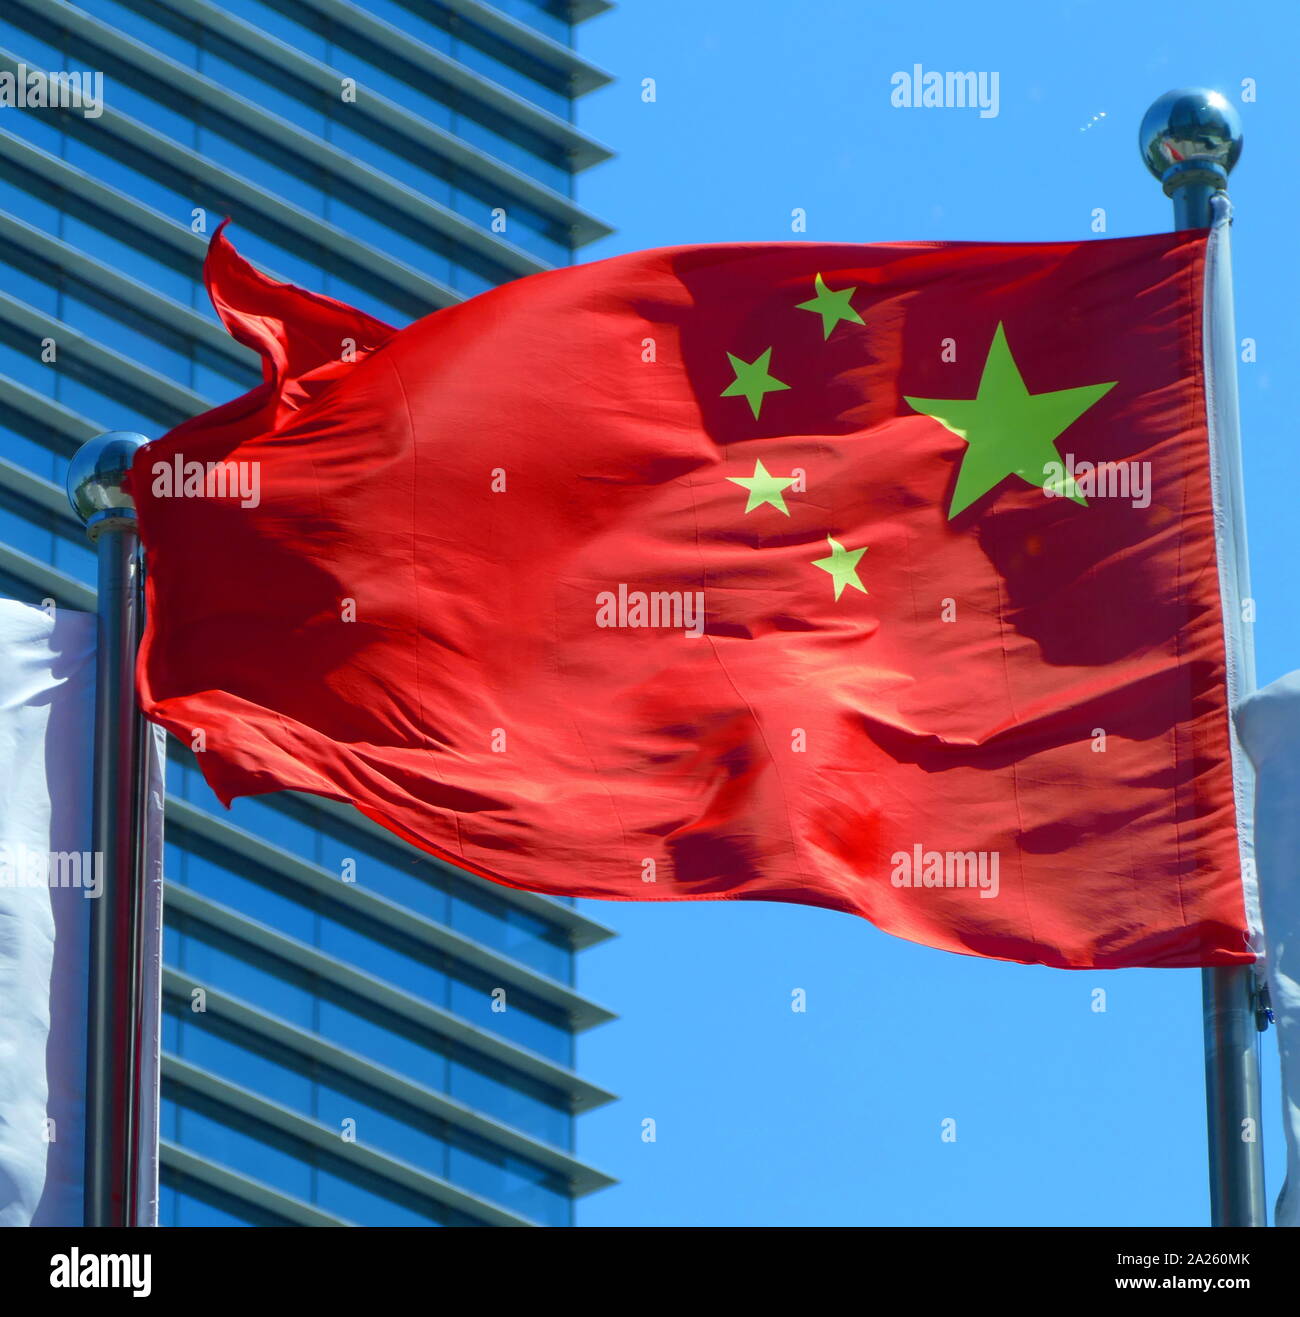 Le drapeau de la Chine, dispose d'une grande star, avec quatre étoiles plus petites. Le rouge représente la révolution communiste ; les cinq étoiles et leur relation représentent l'unité du peuple chinois sous la direction du Parti communiste chinois (PCC). Le premier drapeau a été hissé par l'Armée populaire de libération (APL) sur un poteau, donnant sur la place Tiananmen à Beijing le 1er octobre 1949, lors d'une cérémonie annonçant la création de la République populaire de Chine. Banque D'Images